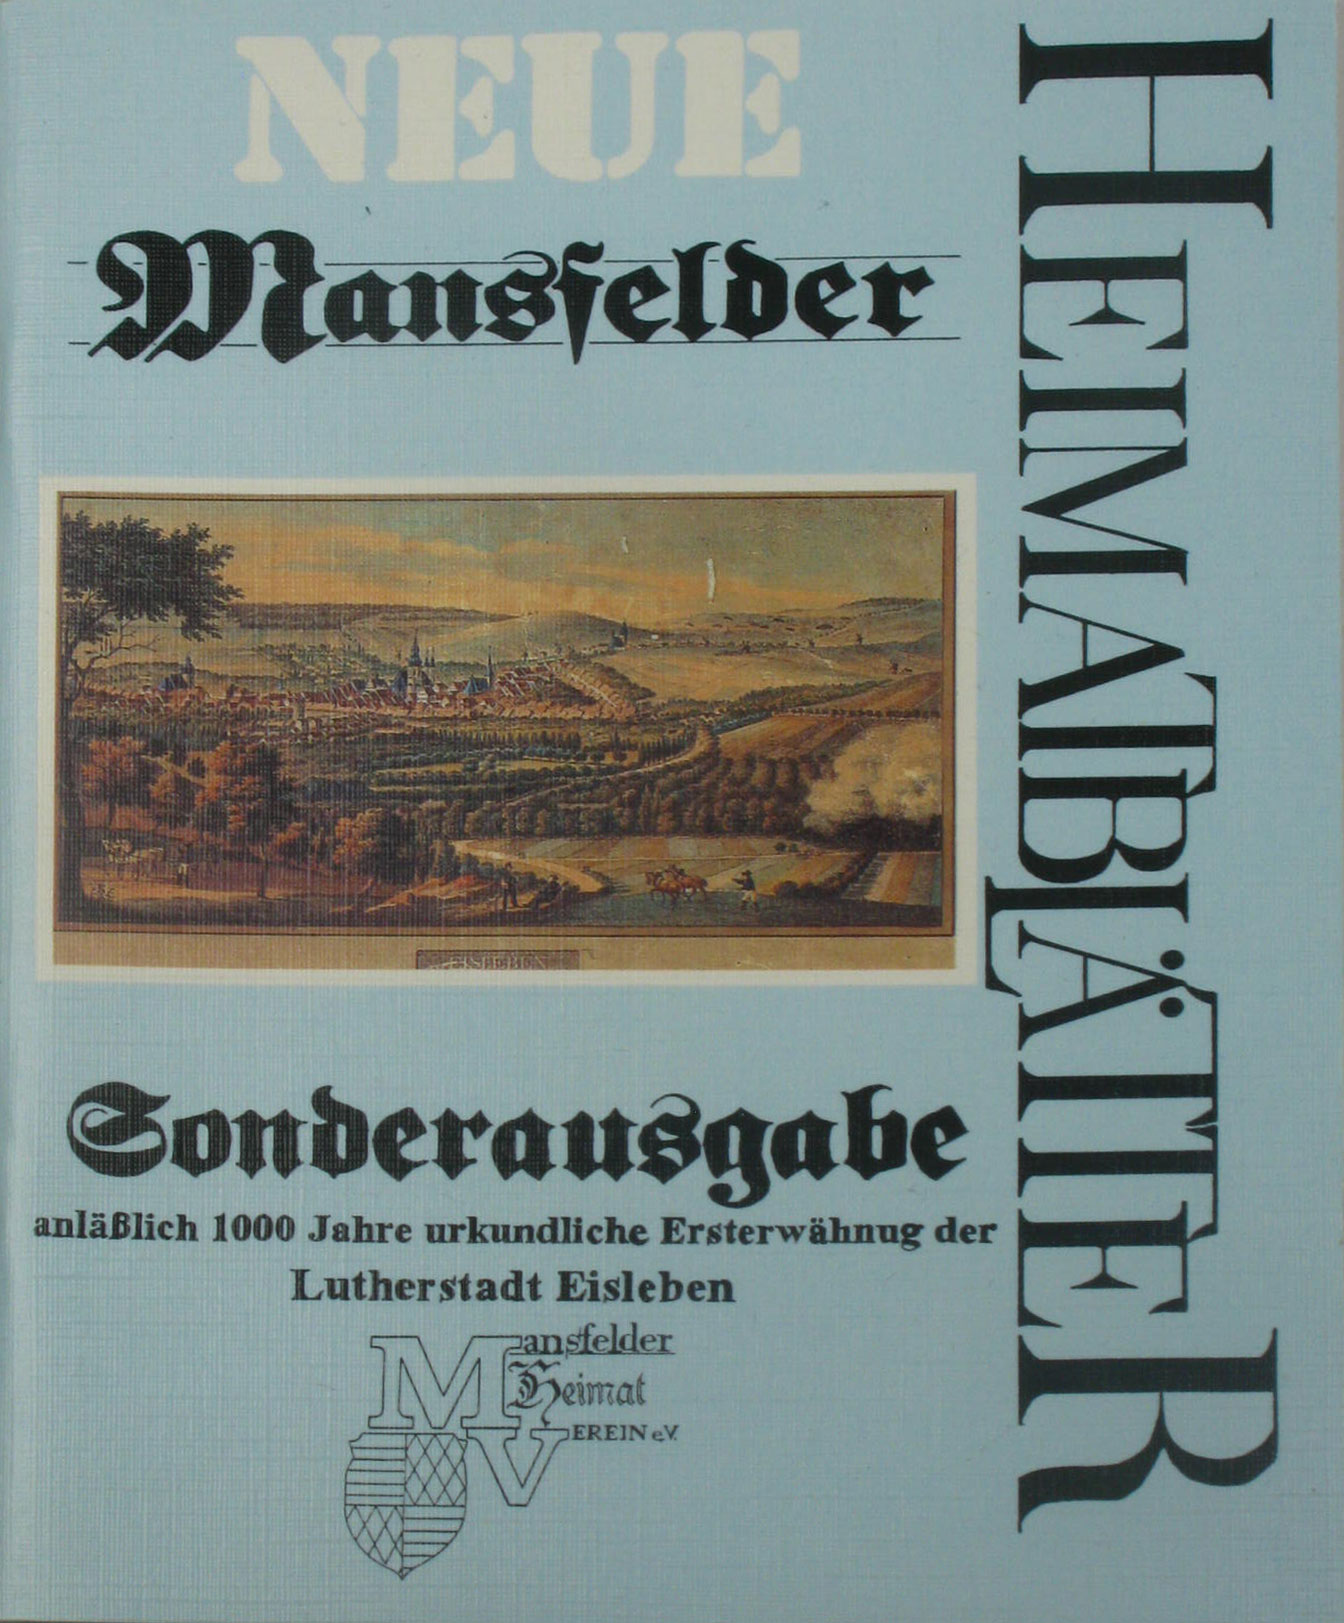 Autorenkollektiv:  Neue Mansfelder Heimatblätter. Sonderausgabe anläßlich 1000 Jahre urkundliche Ersterwähnung der Lutherstadt Eisleben. 